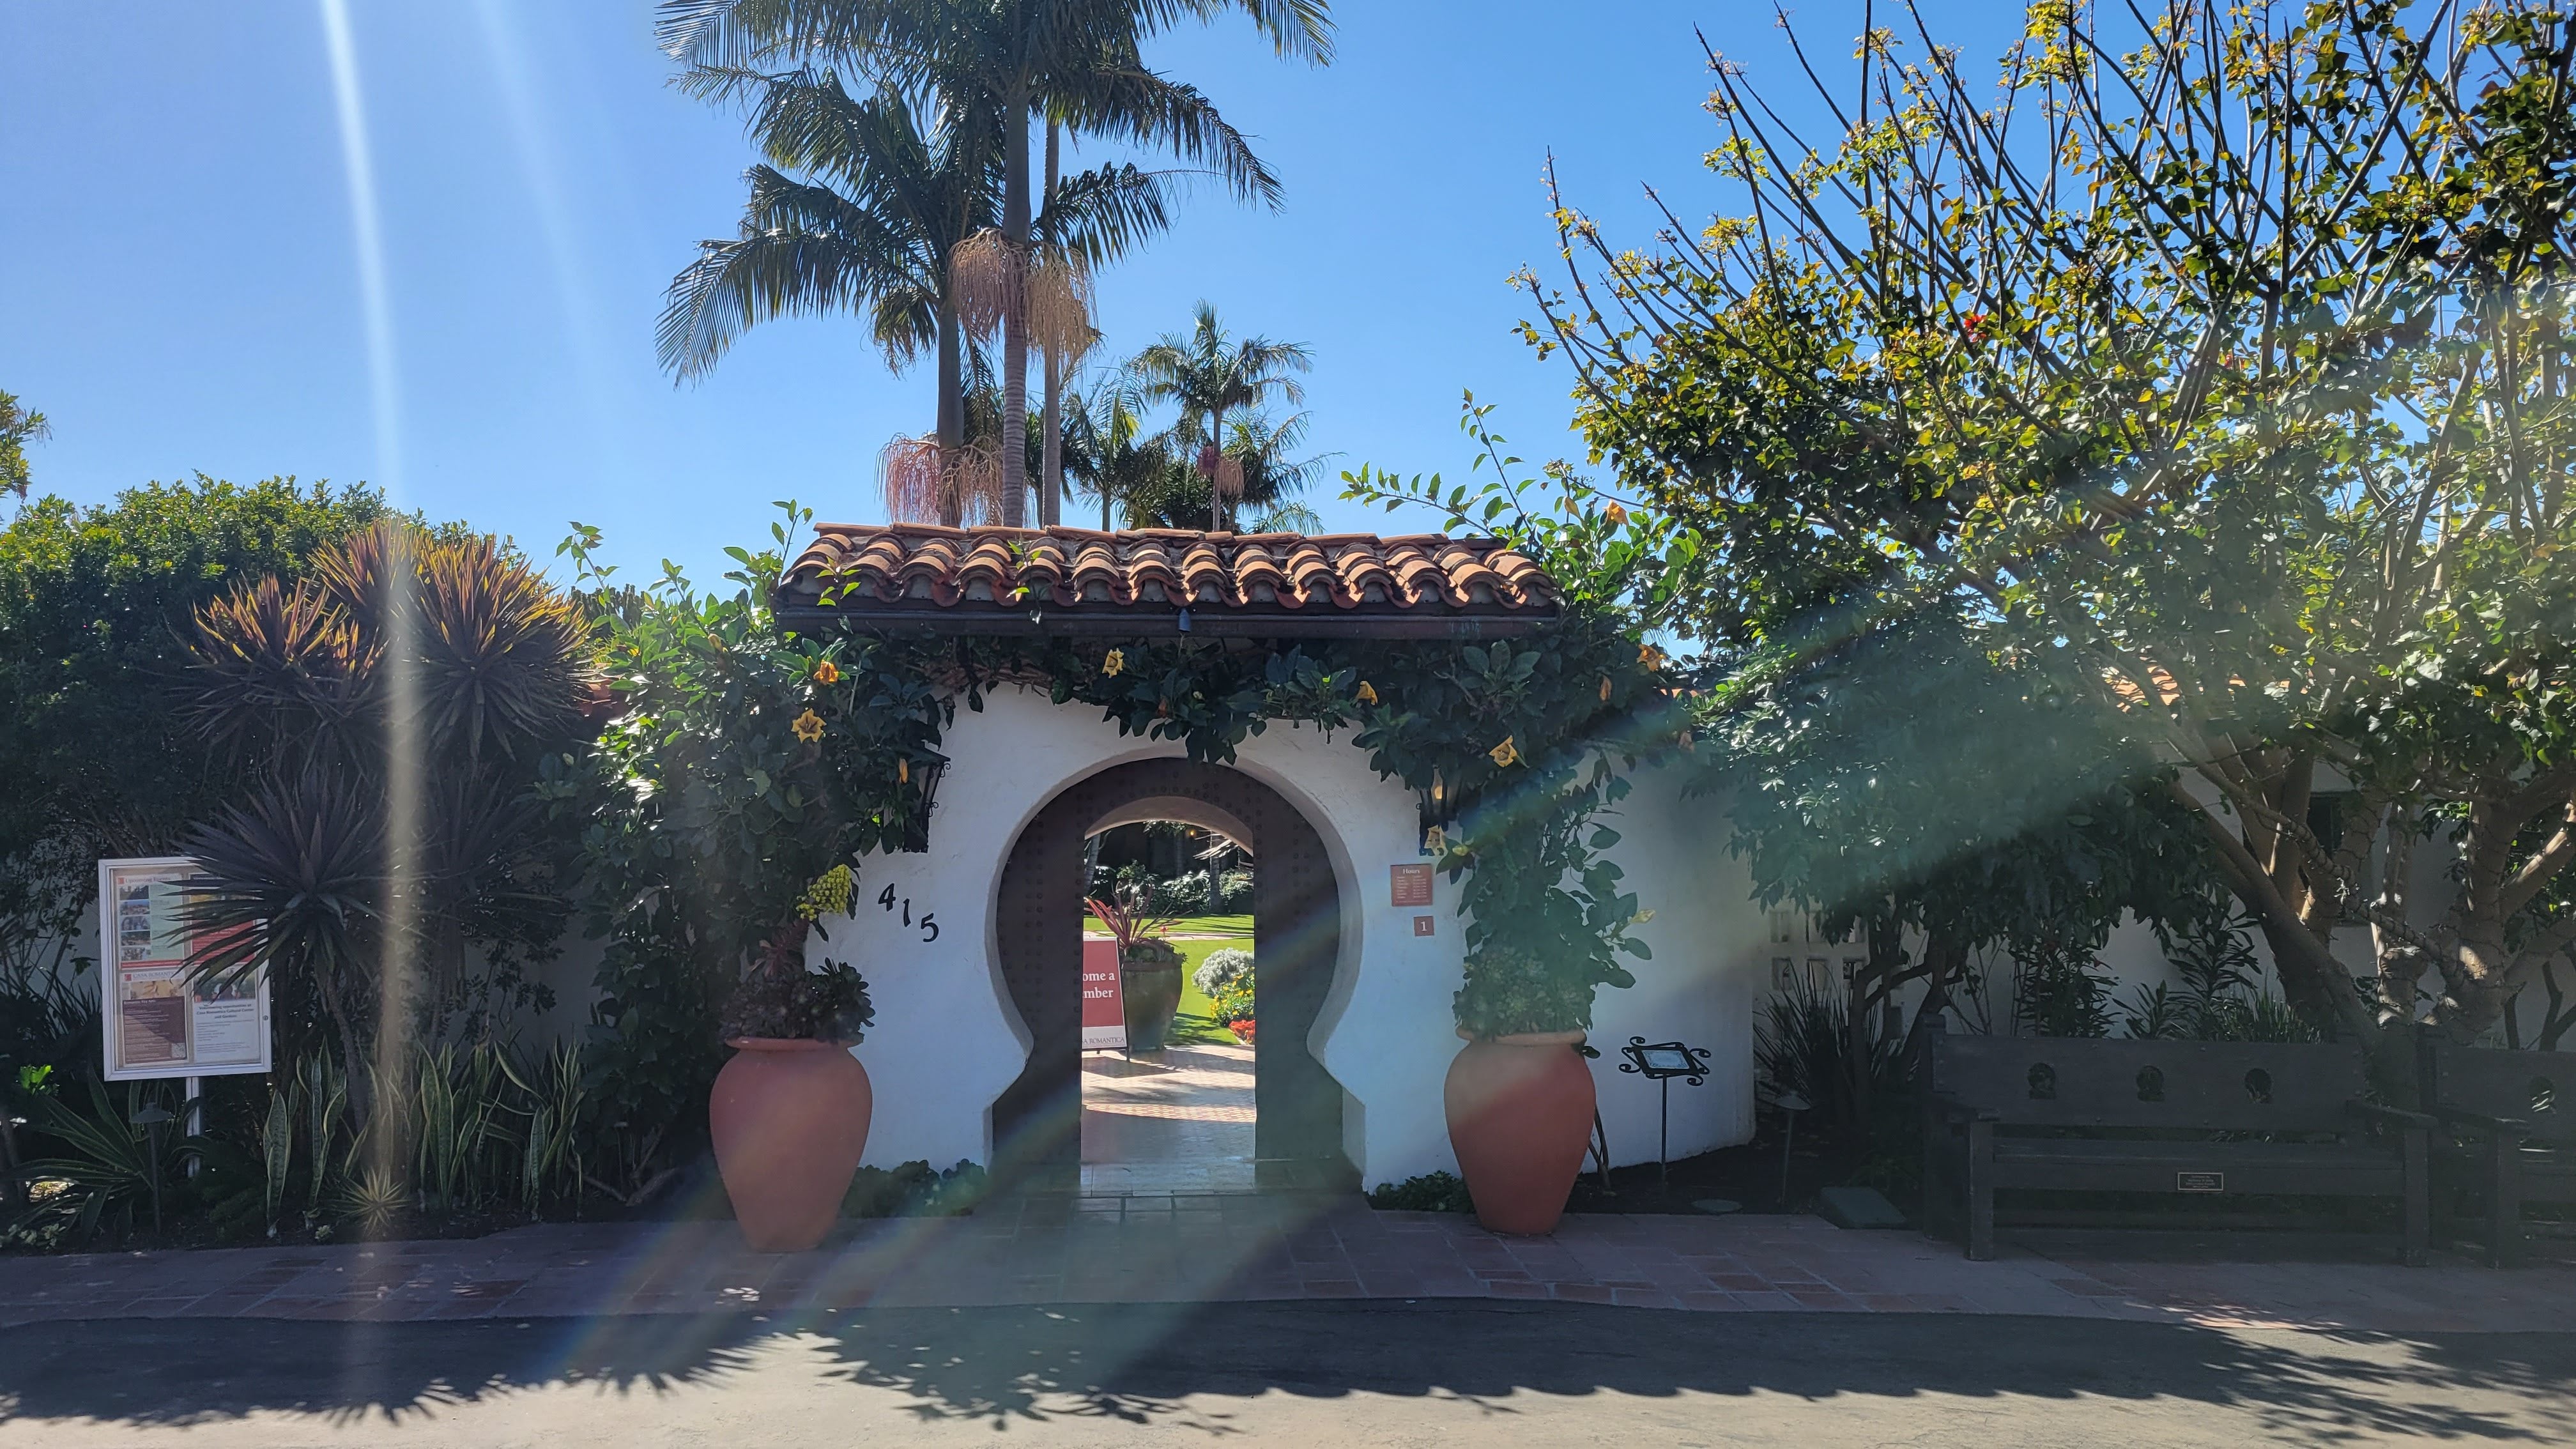 Casa Romantica Cultural Center and Gardens in San Clemente, California